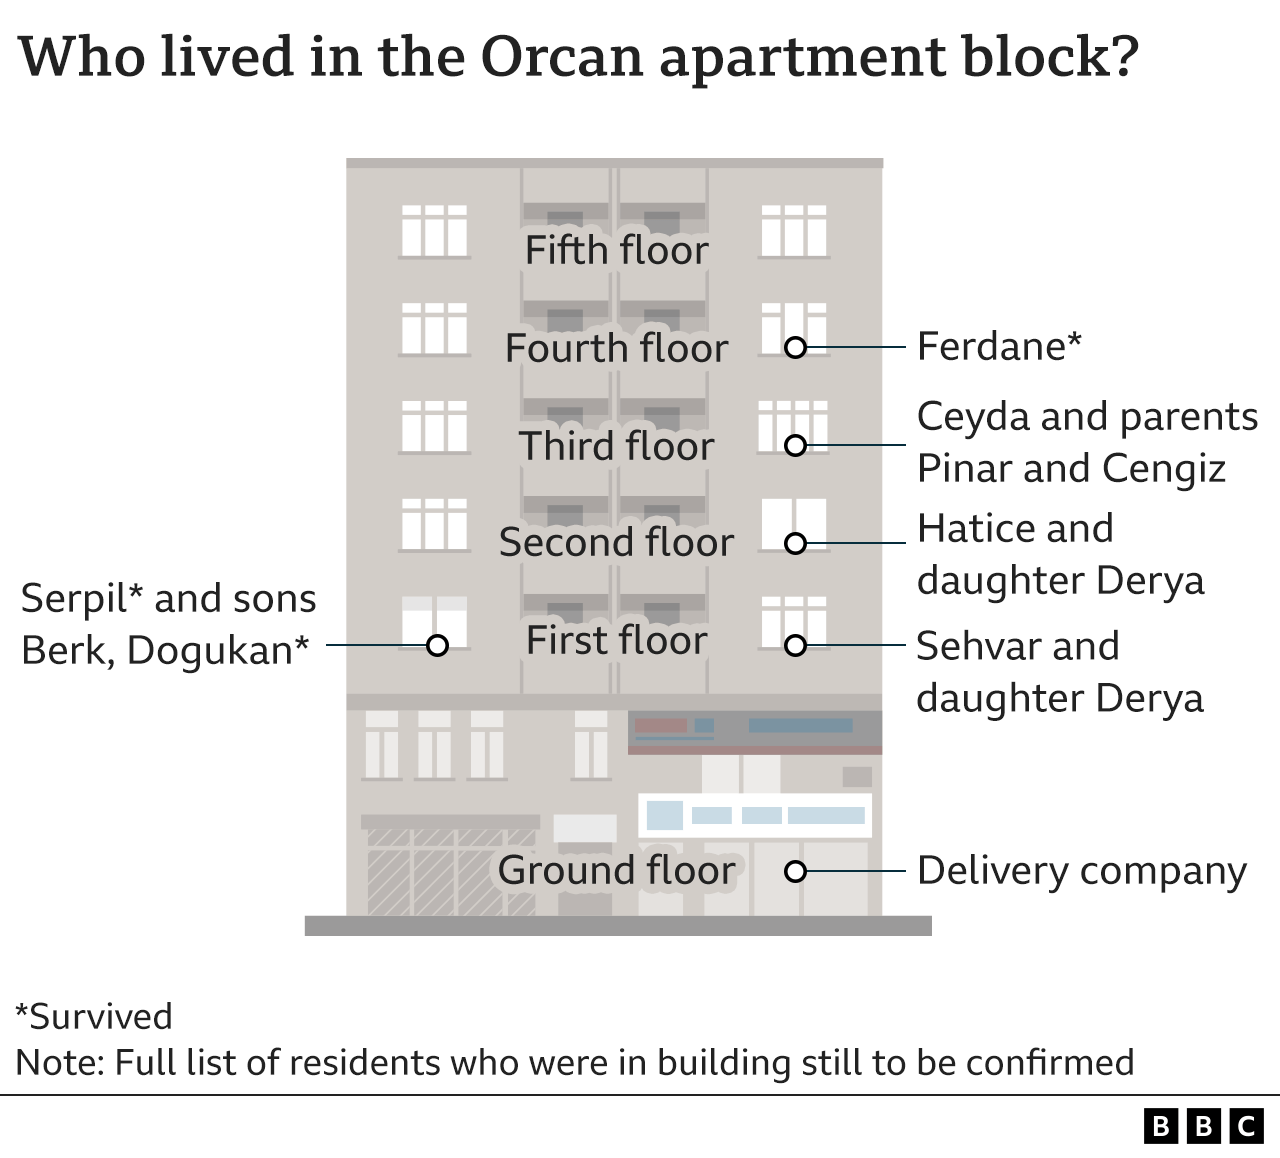 图表显示谁住在 Orcan 公寓楼的哪一层。 Ceyda 和她的父母住在三楼